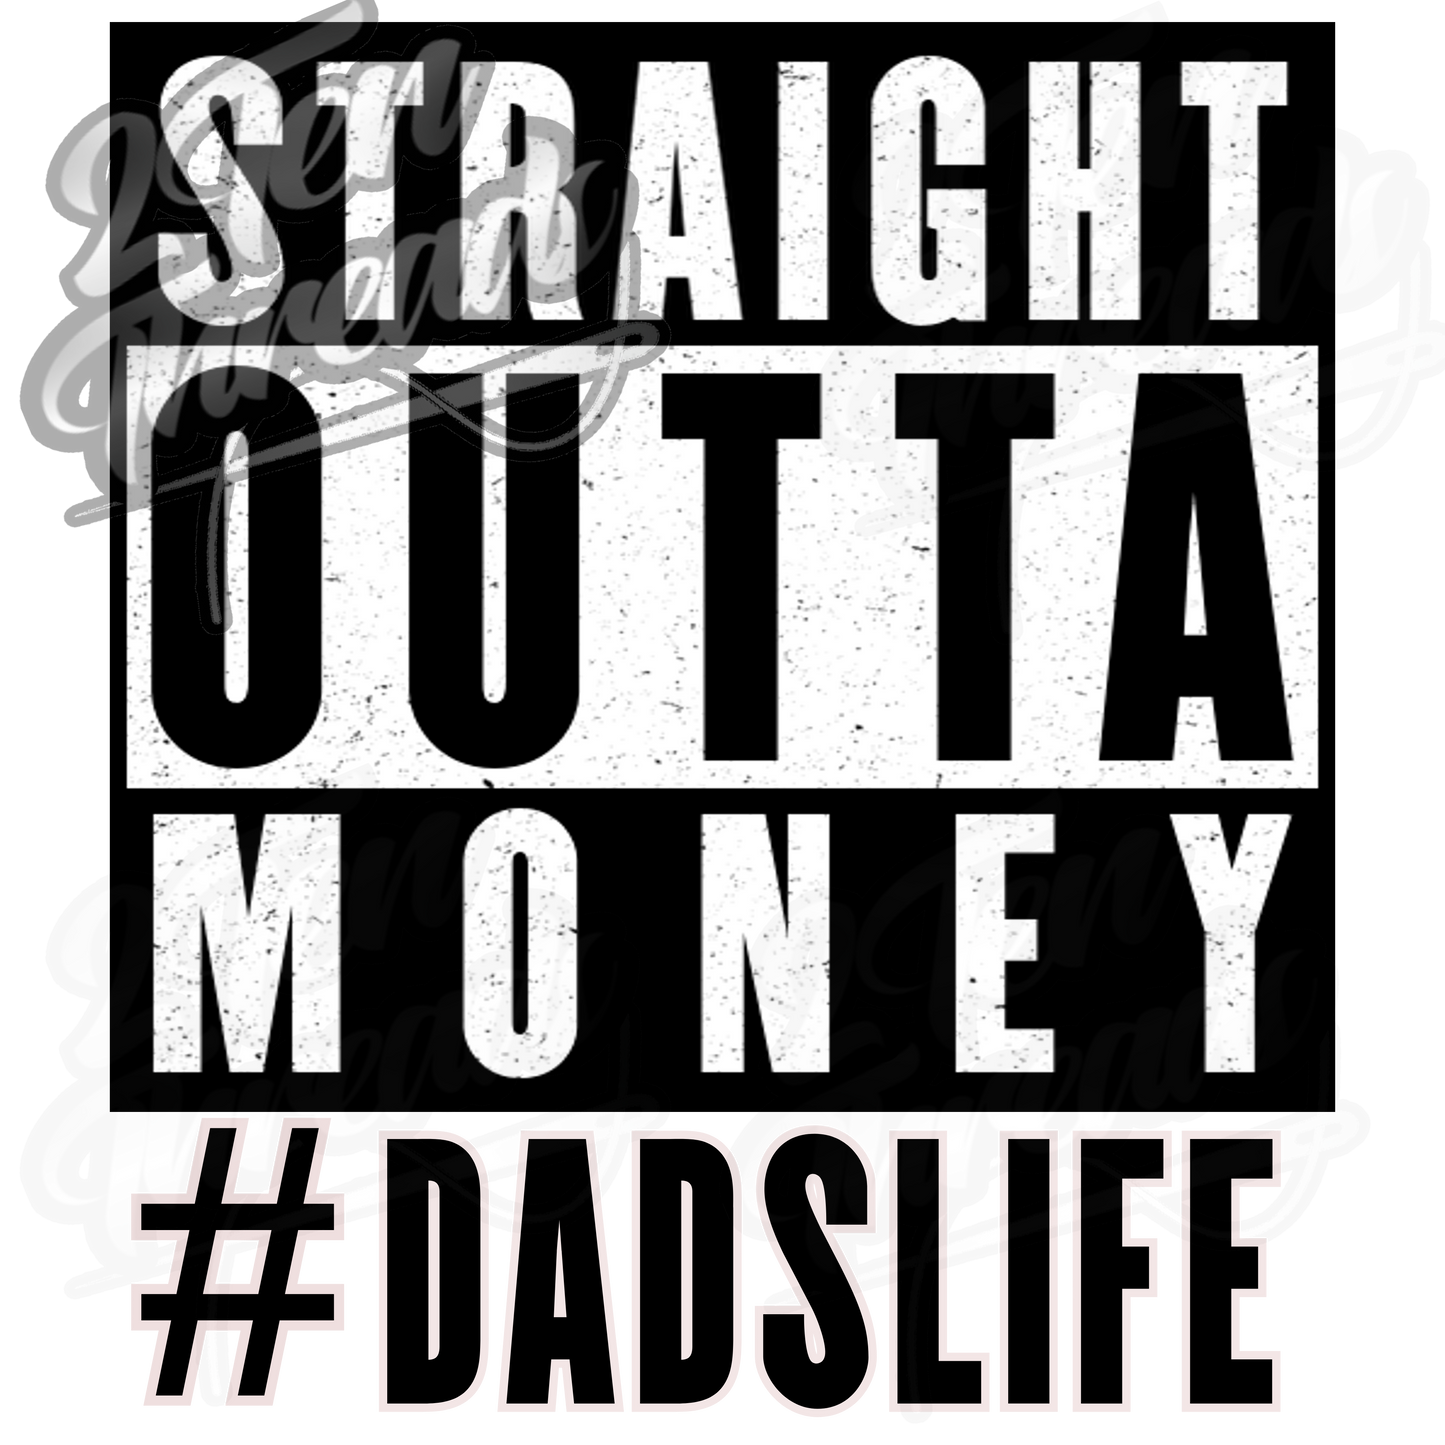 #DadsLife